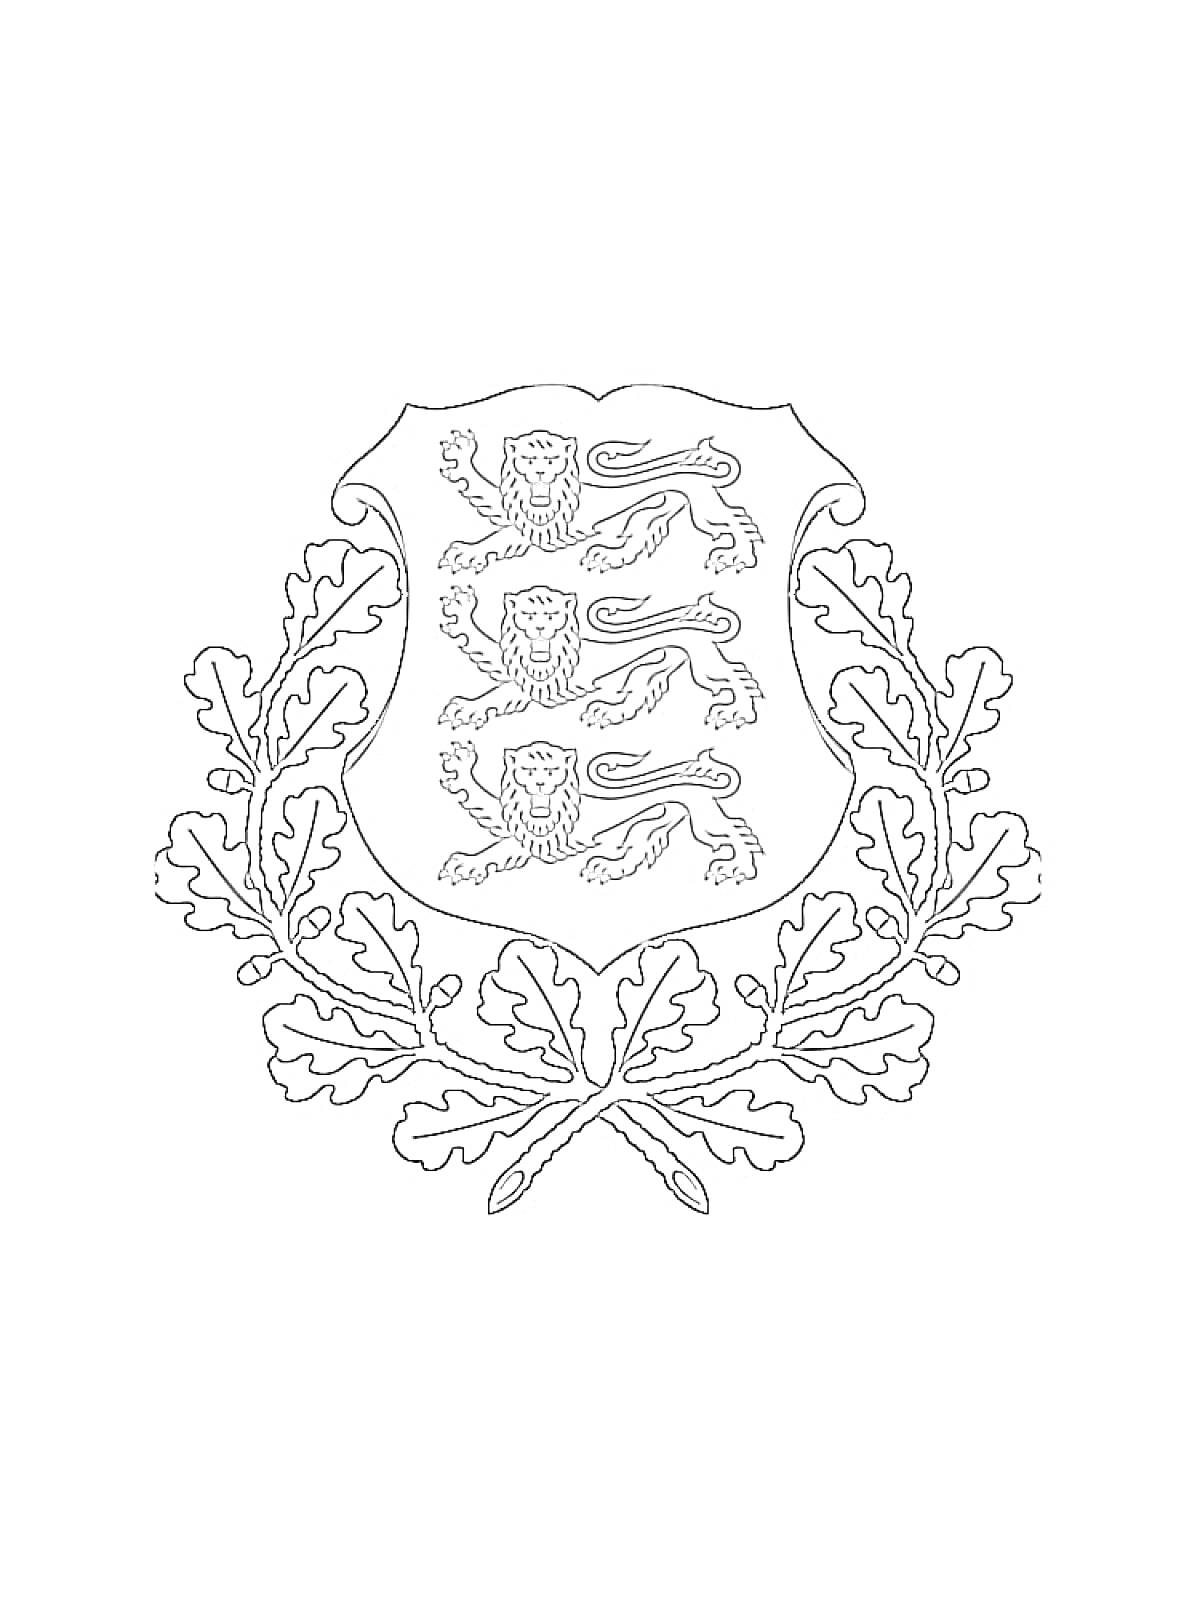 Раскраска Герб с тремя львами и дубовыми листьями